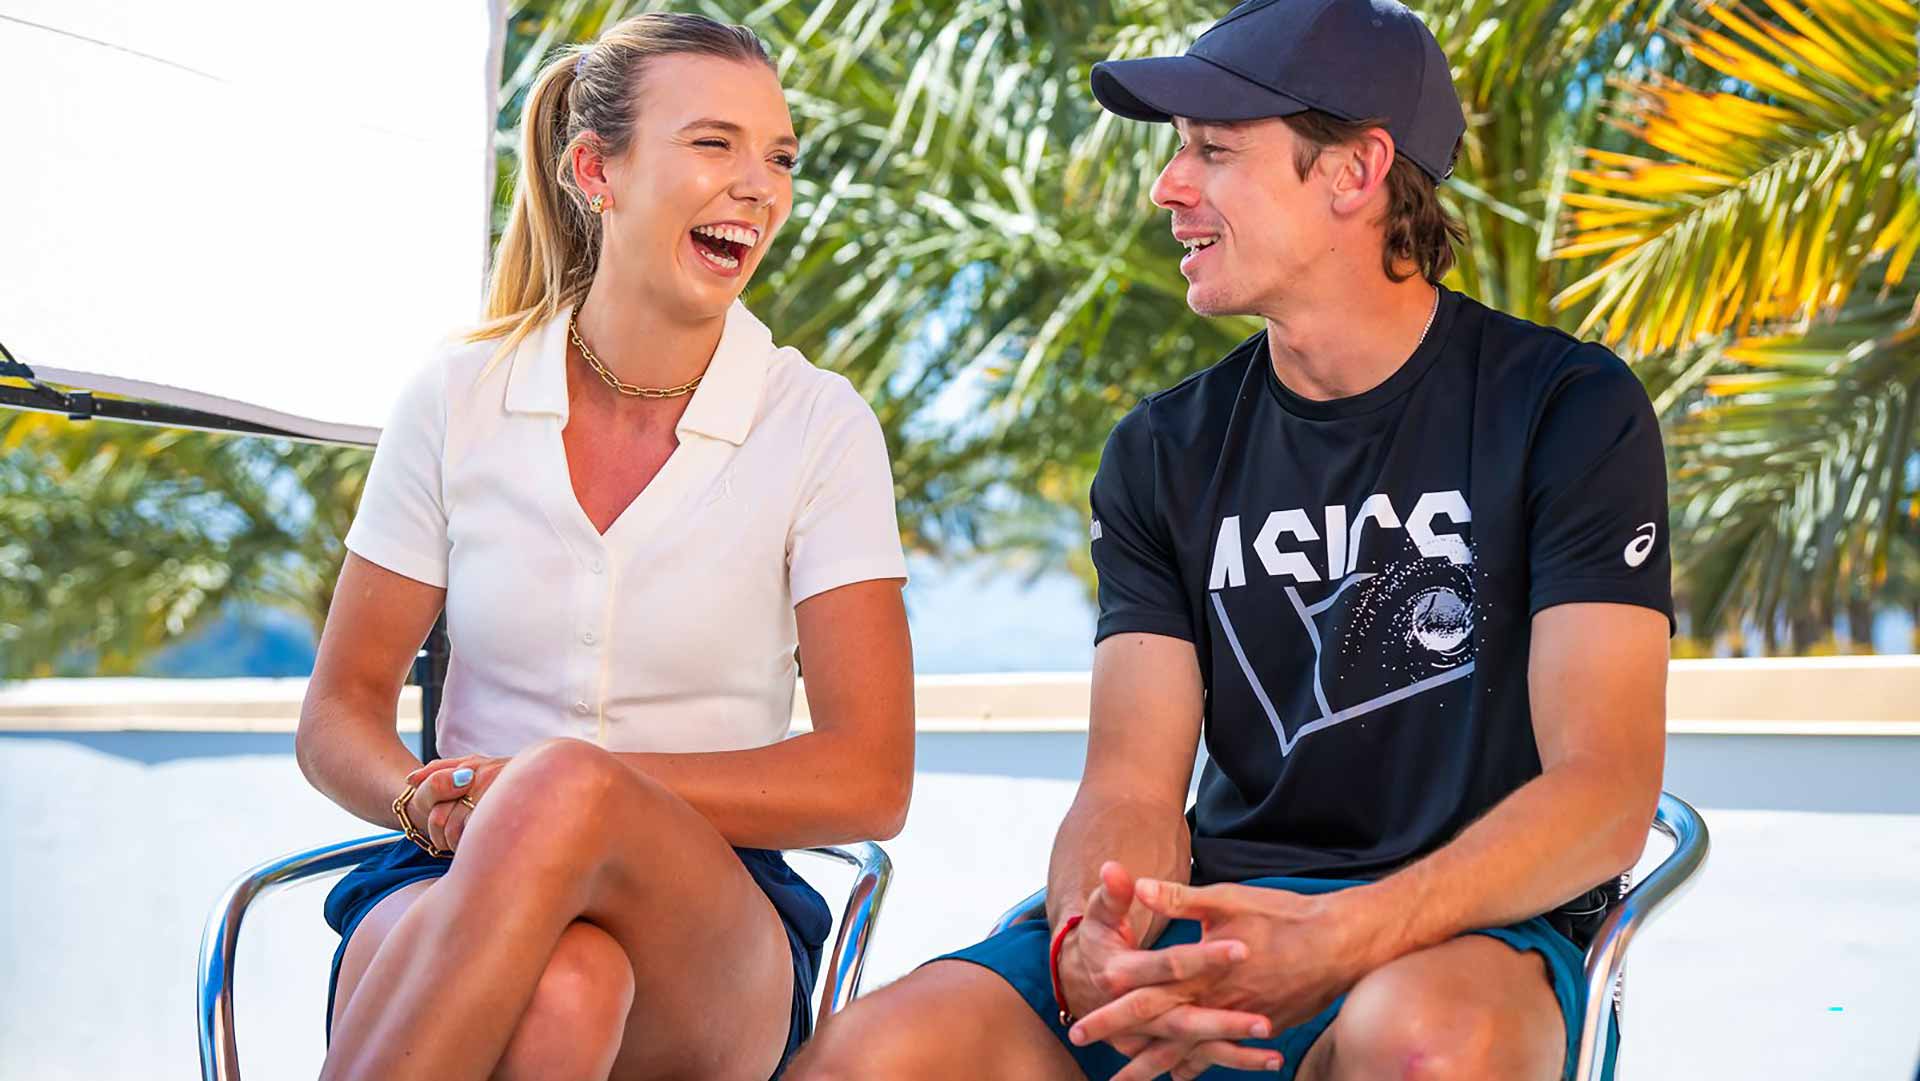 WTA star Katie Boulter shares a laugh with boyfriend Alex de Minaur in Indian Wells.